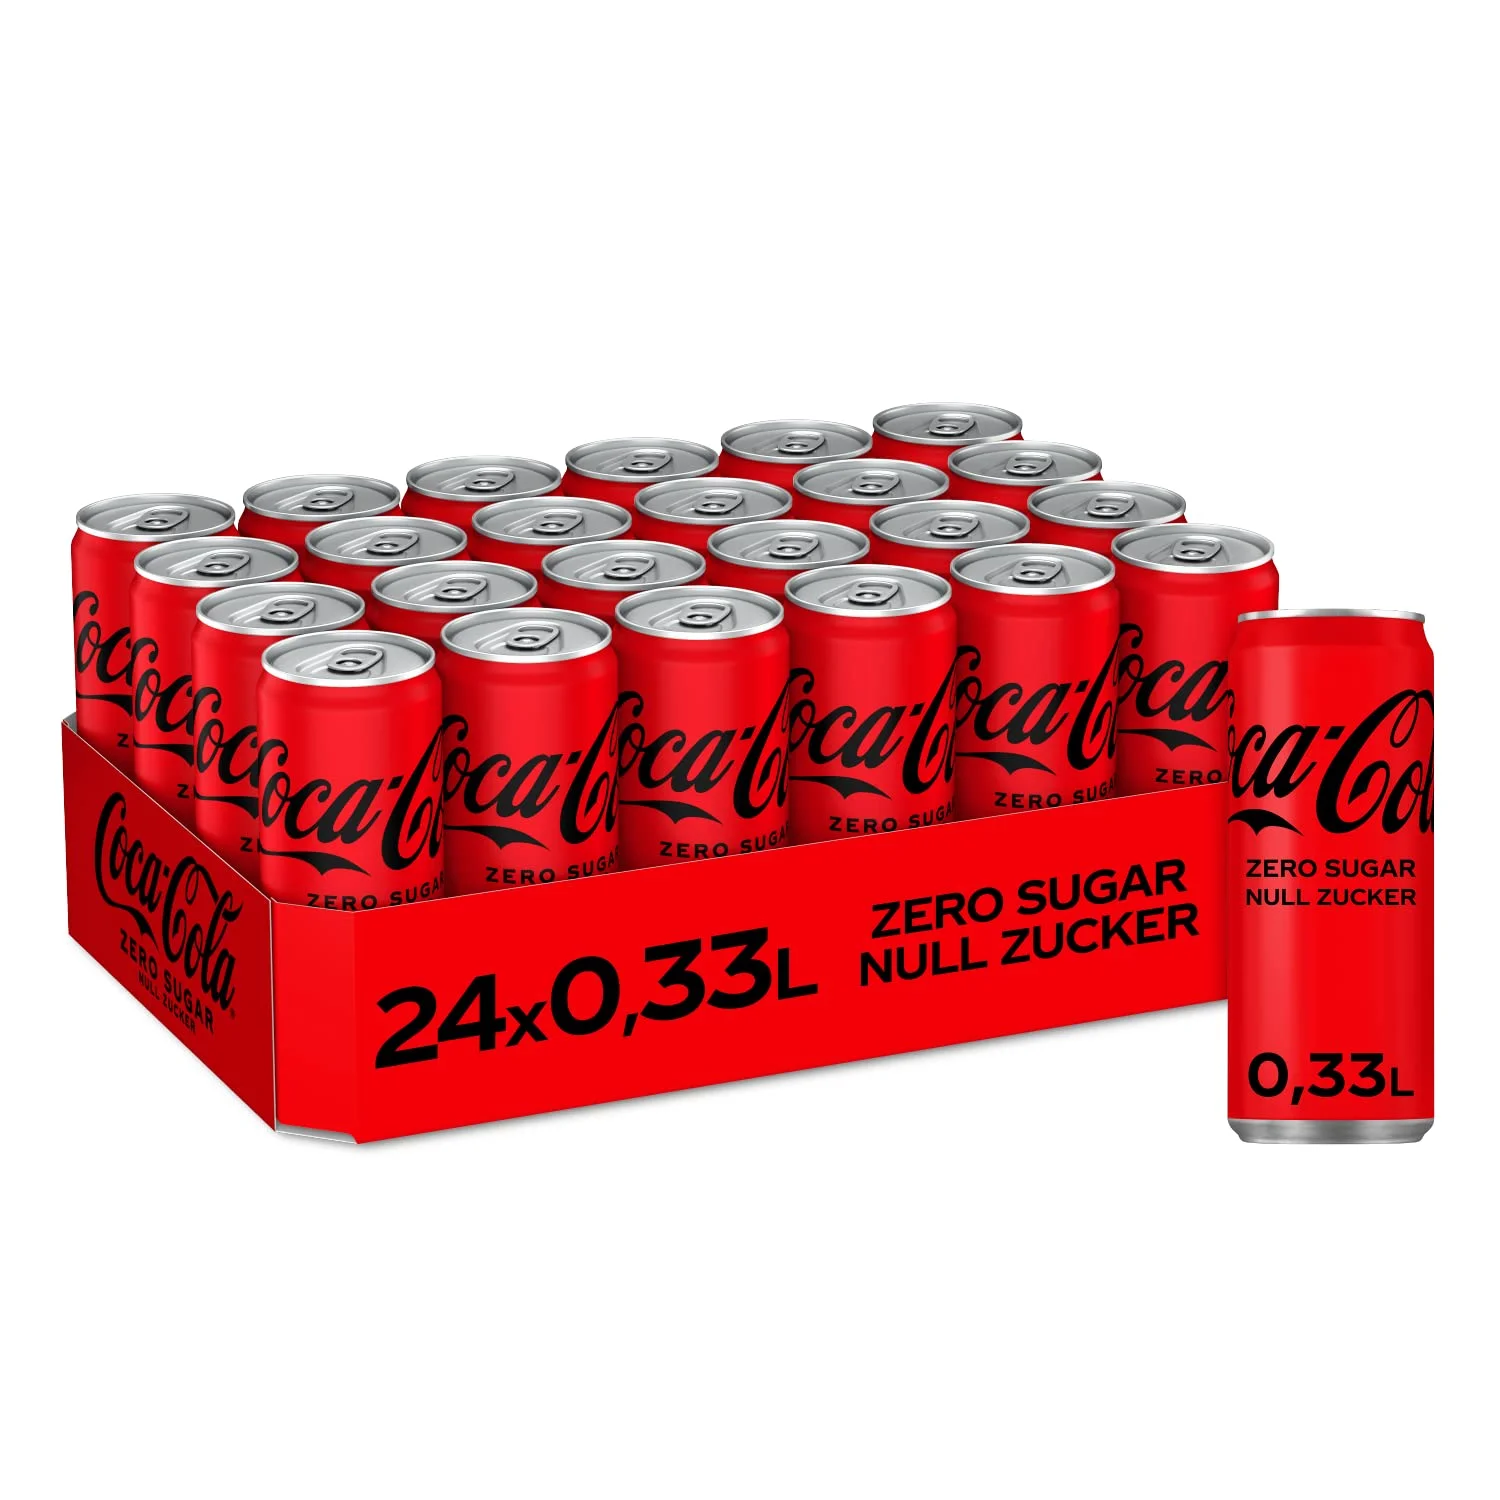 Coca-Cola Zero Sugar – Caffeinated Soft Drink with Original Coca-Cola Flavour – Zero Sugar and No Calories – in Stylish Tins (24 x 330 ml)